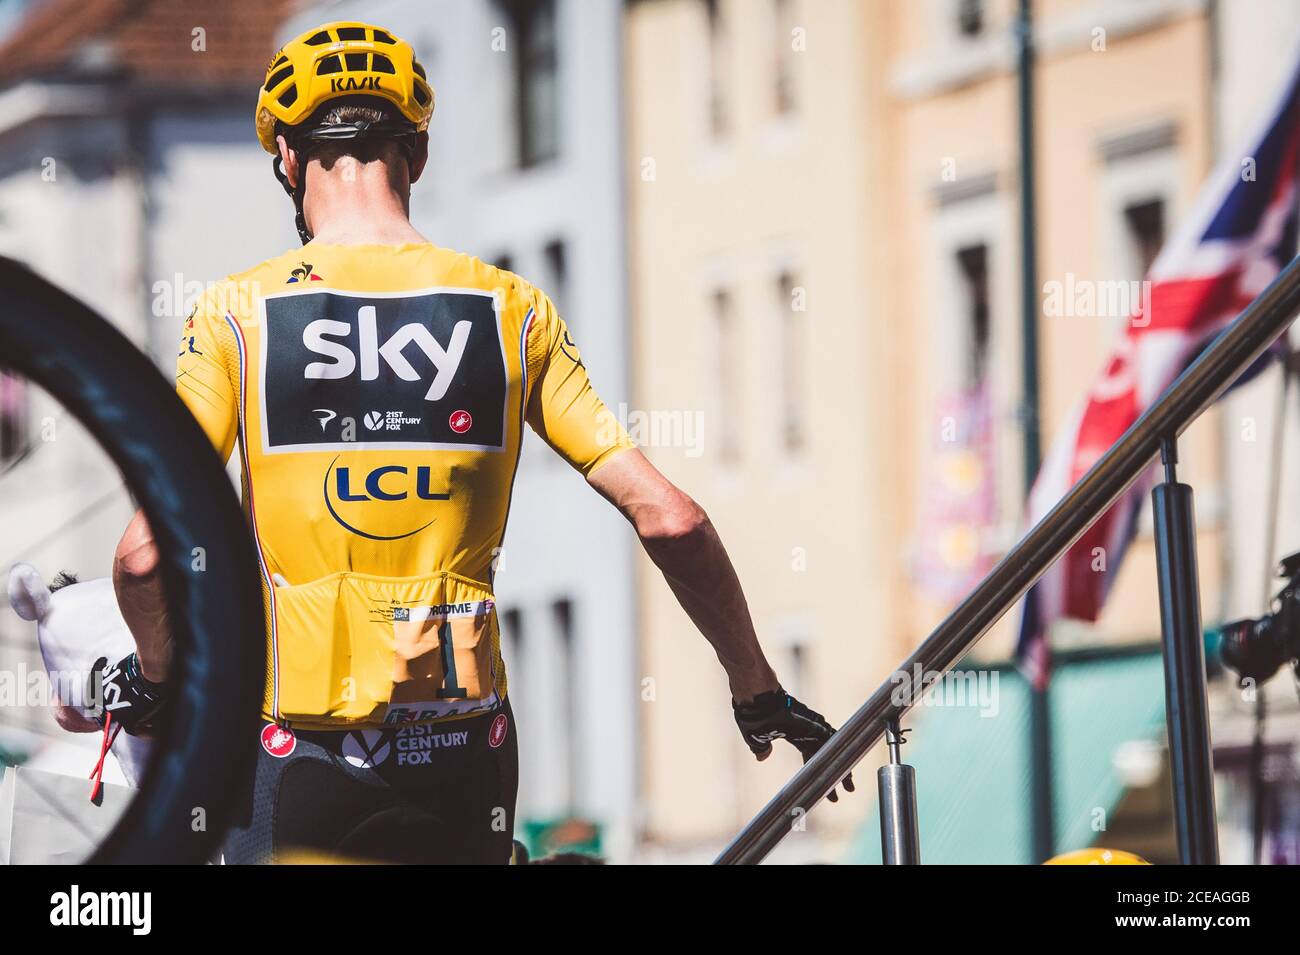 6 luglio 2017, Francia; Ciclismo, Tour de France 6° tappa: Chris Froome al via di scena. Foto Stock